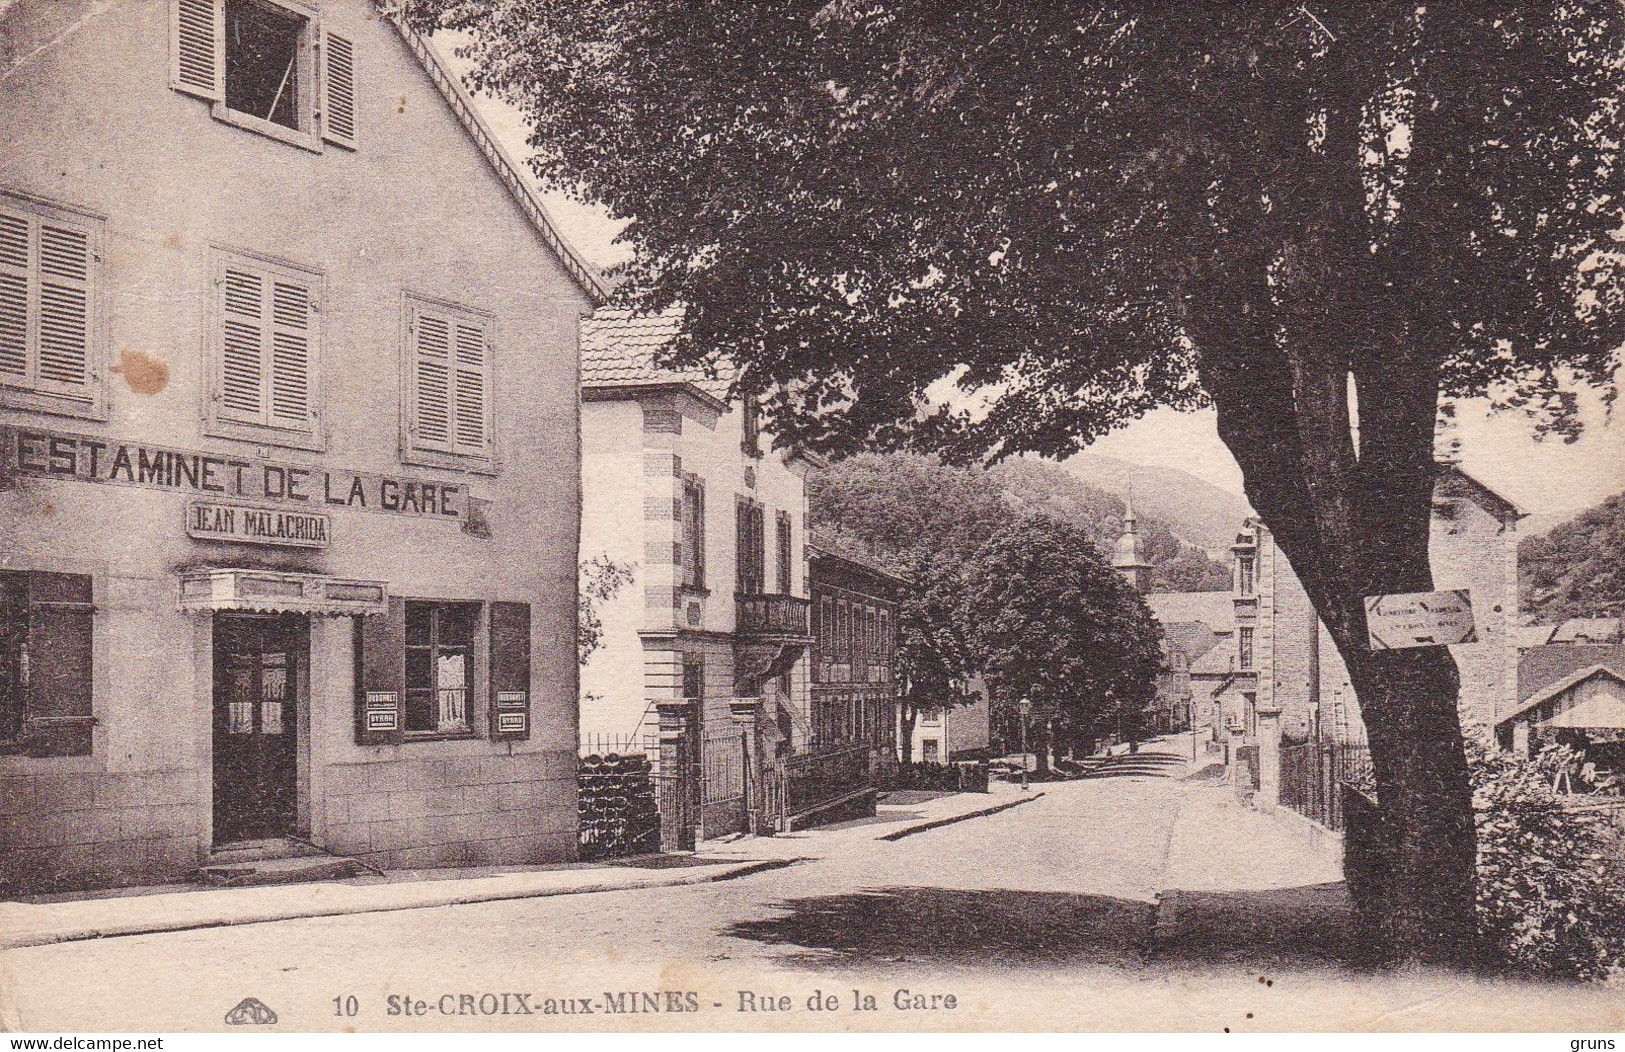 Ste Croix Aux Mines Rue De La Gare (Estaminet De La Gare), Rare - Sainte-Croix-aux-Mines